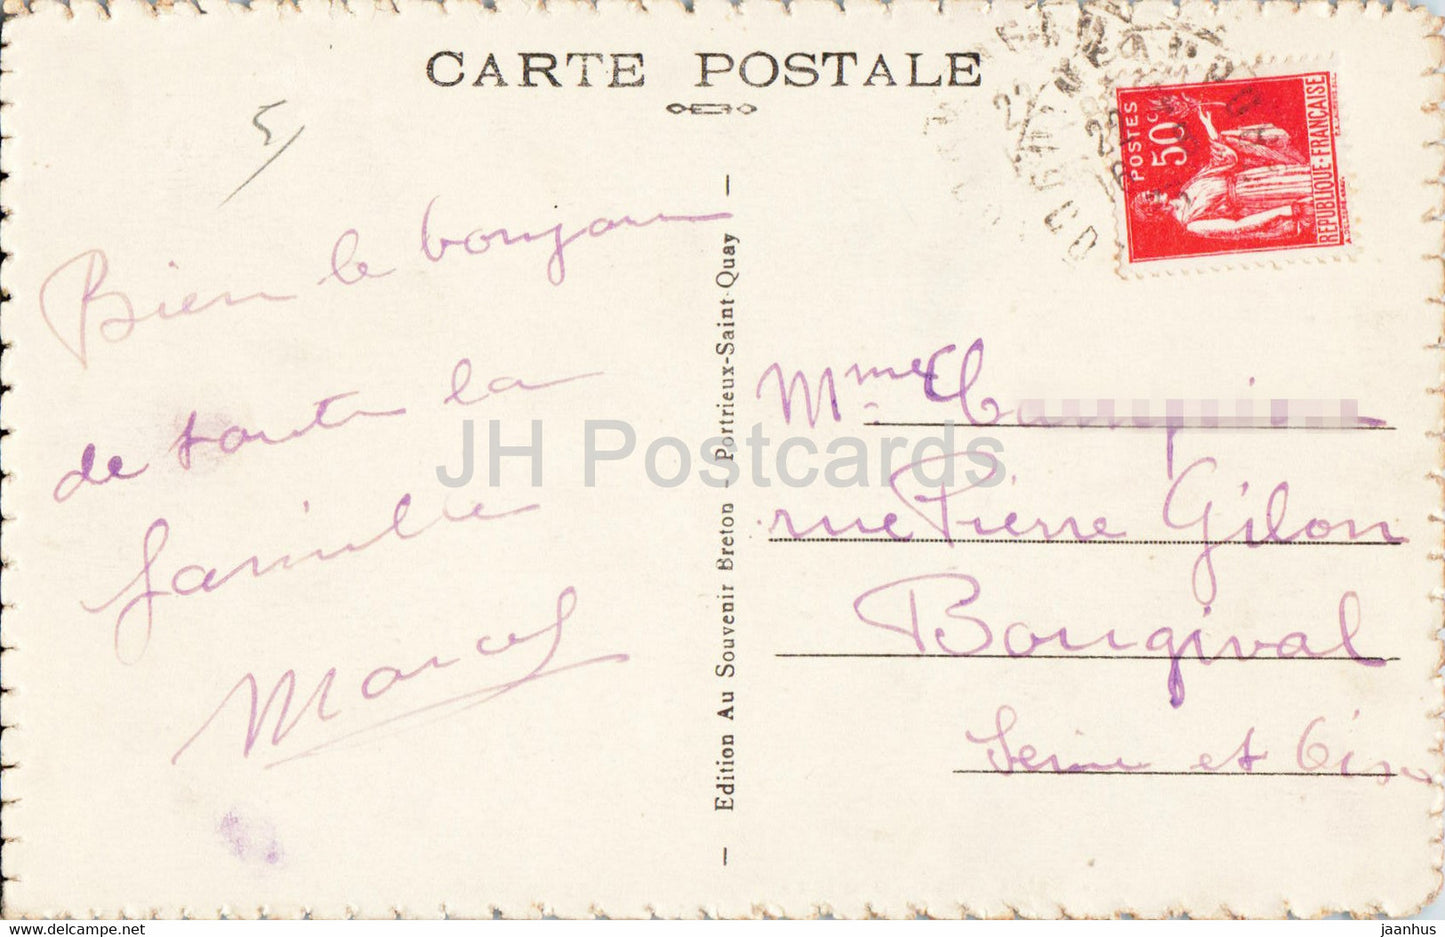 Saint Quay Portieux - Les Falaises de la Comtesse - 77 - carte postale ancienne - France - oblitéré